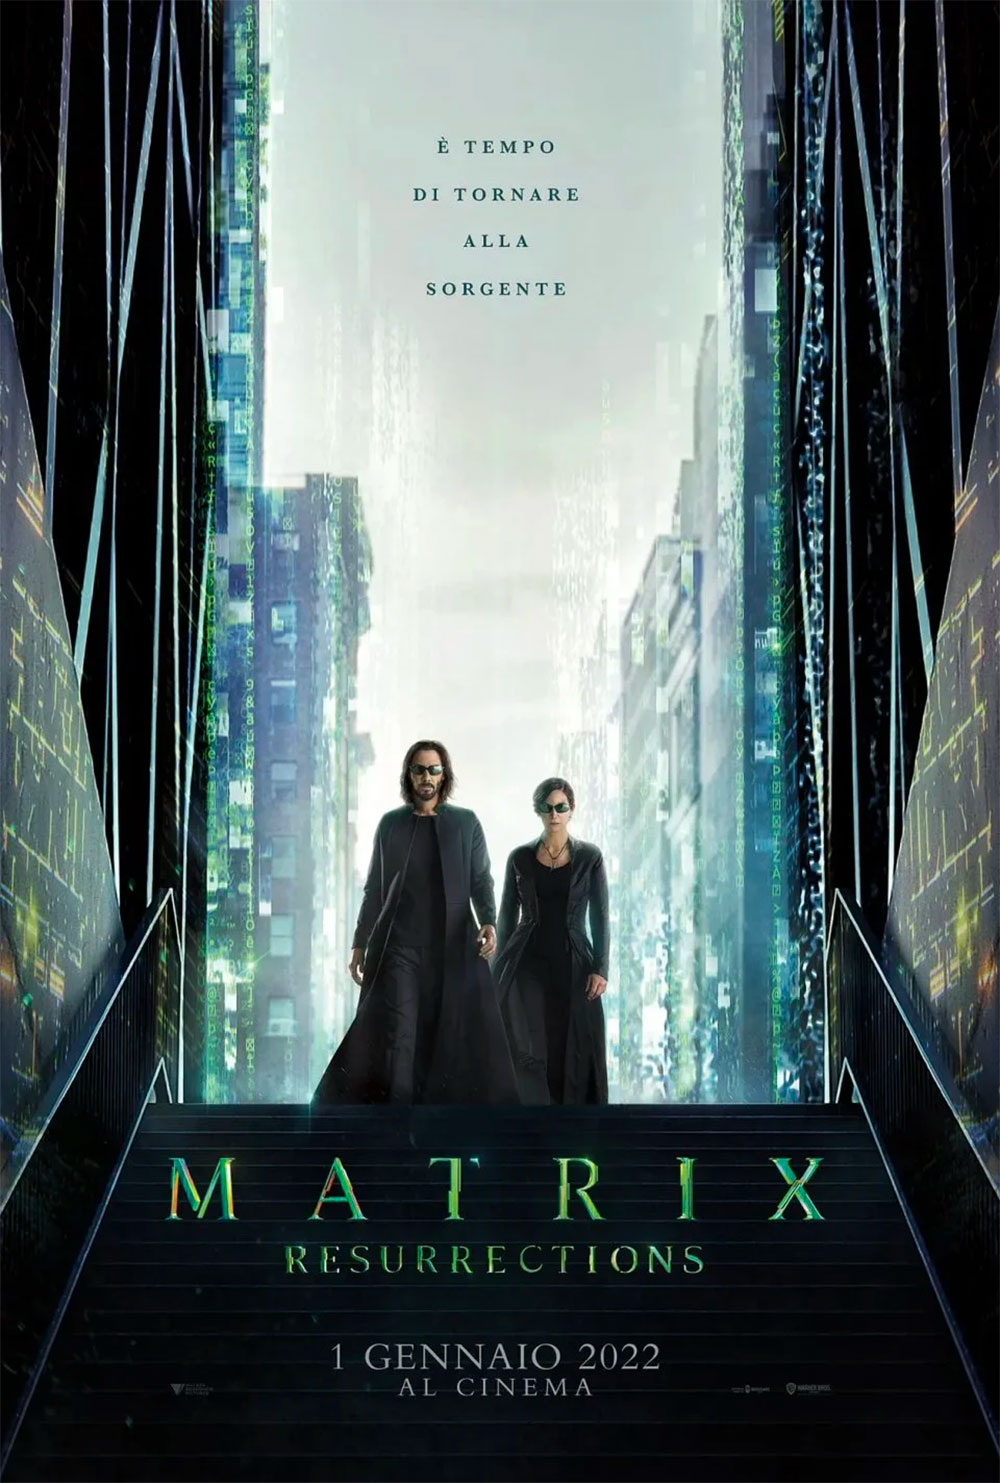  Dall'articolo: Matrix - Resurrections, il poster italiano del film.